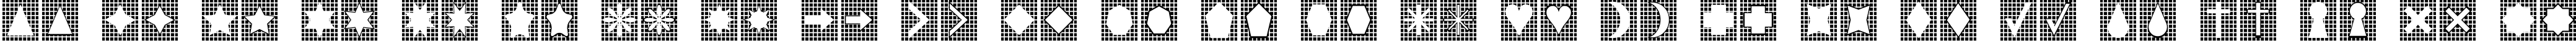 Пример написания английского алфавита шрифтом Grids n Things